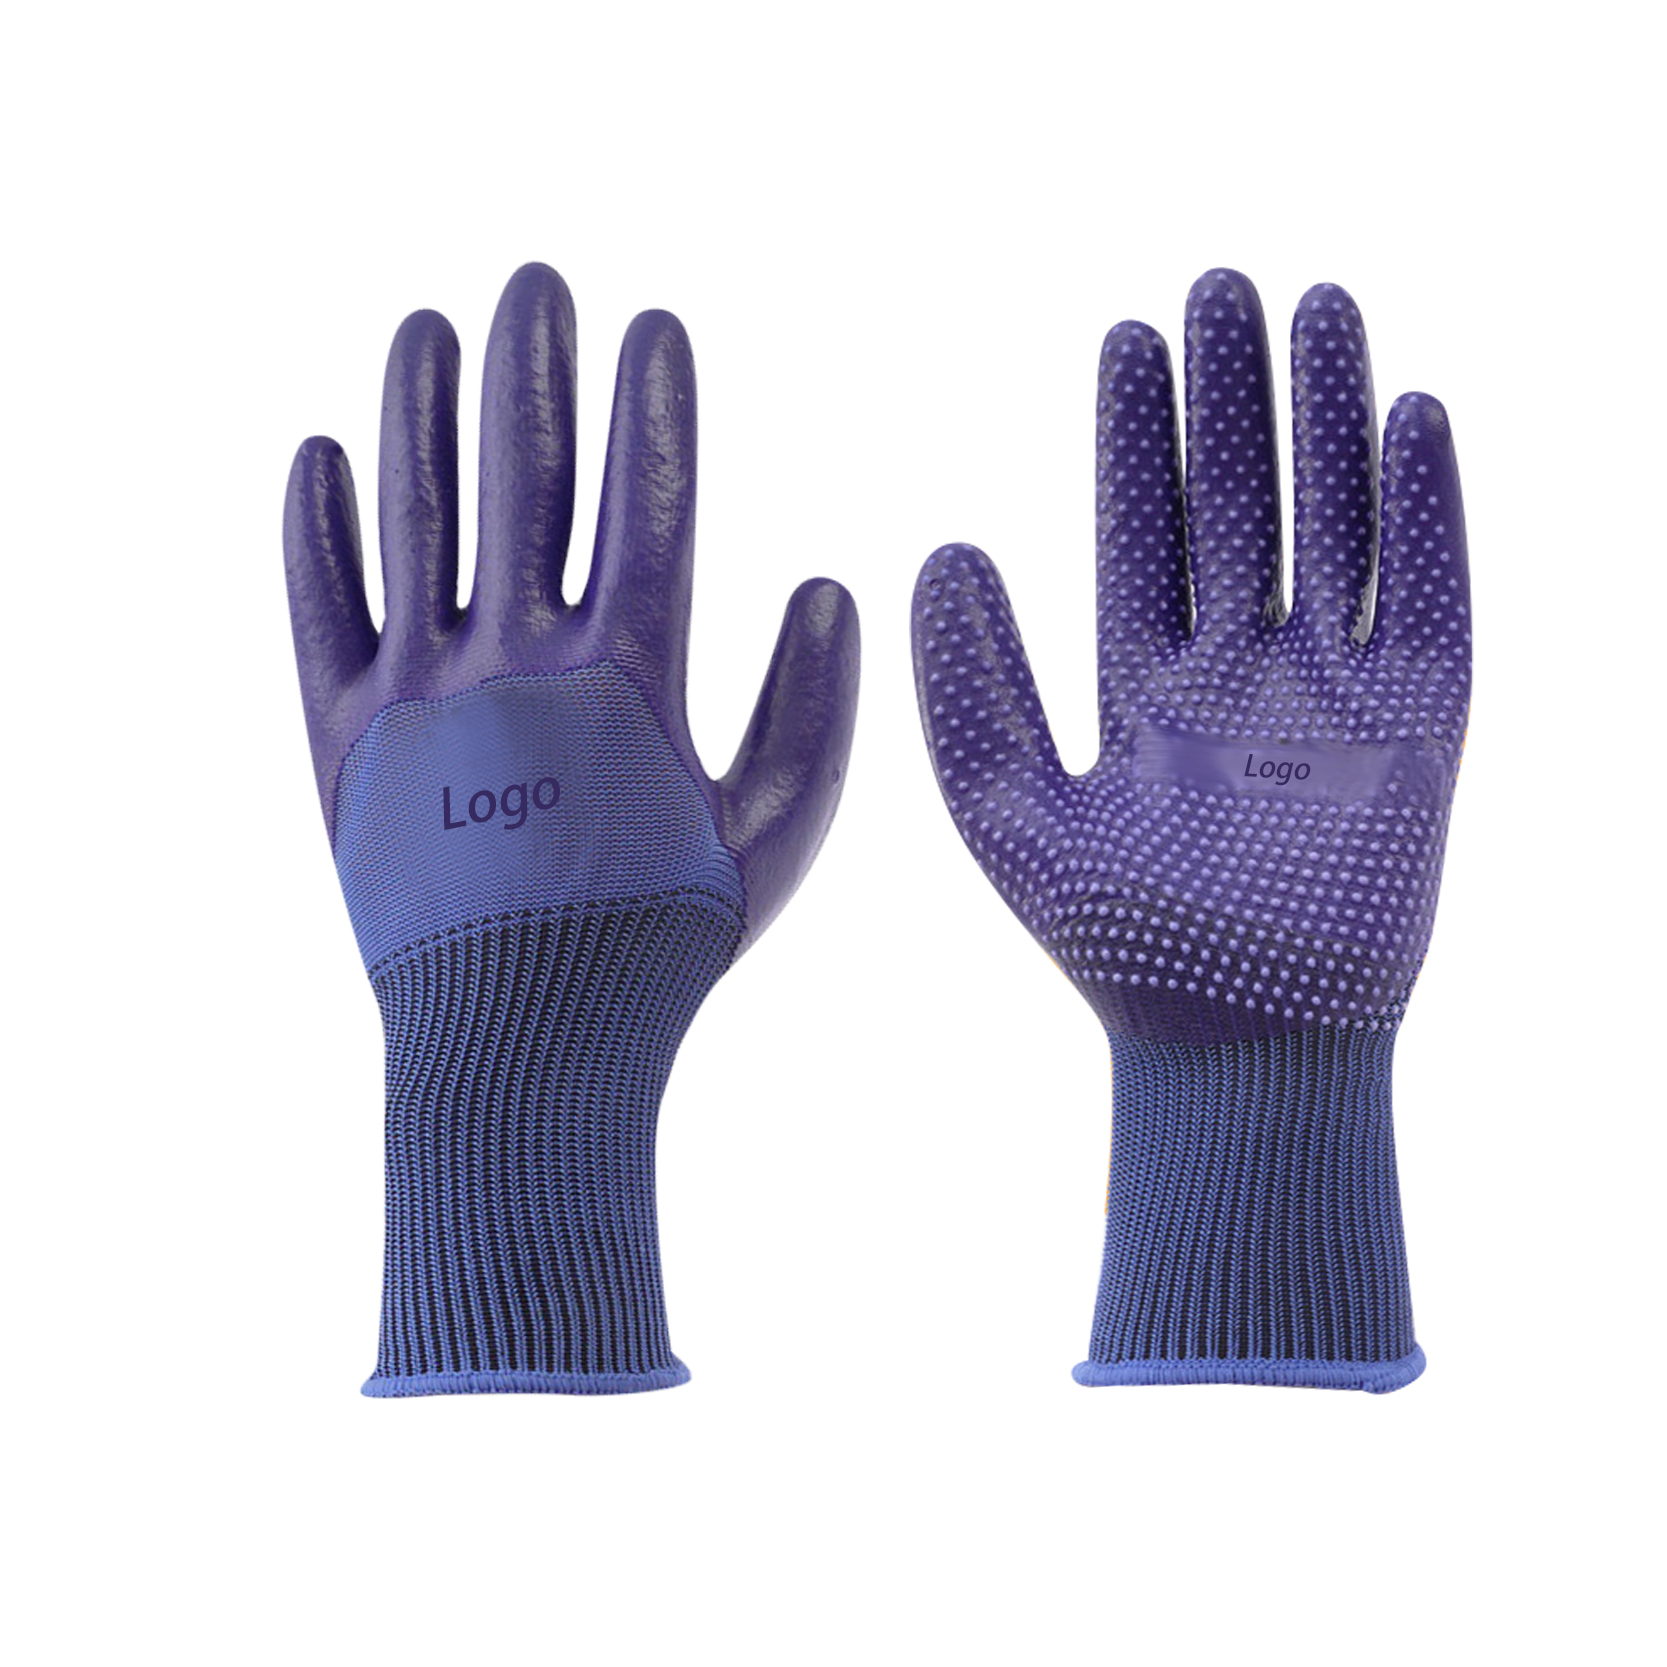 Po meri narejene delovne rokavice Zaščitne delovne rokavice za splošno uporabo s prevleko iz pvc pik